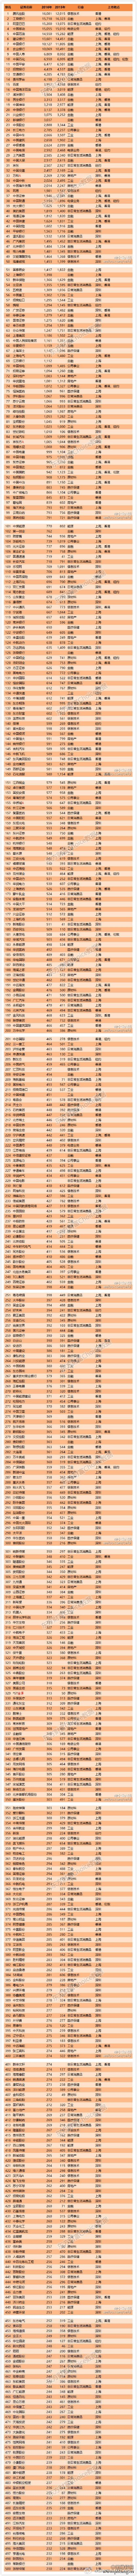 中国2016上市企业500强排名